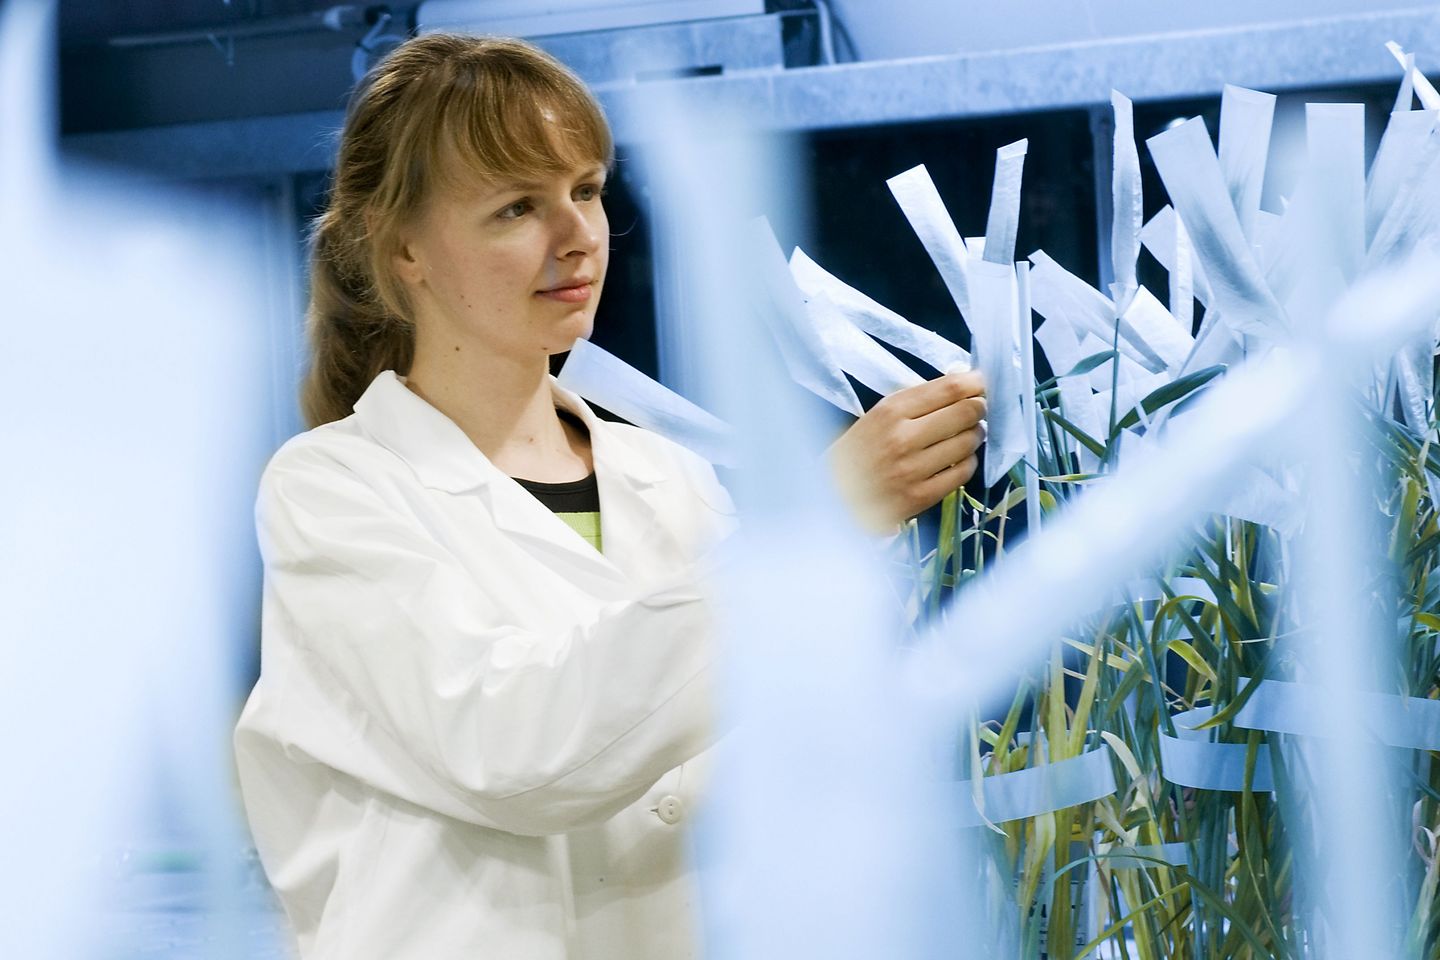 Eine junge Wissenschaftlerin in weissem Kittel untersuch Pflanzenhalme, die in papierähnliche Kappen gehüllt sind und zur Analyse von unbekannten Resistenzgenen dienen.